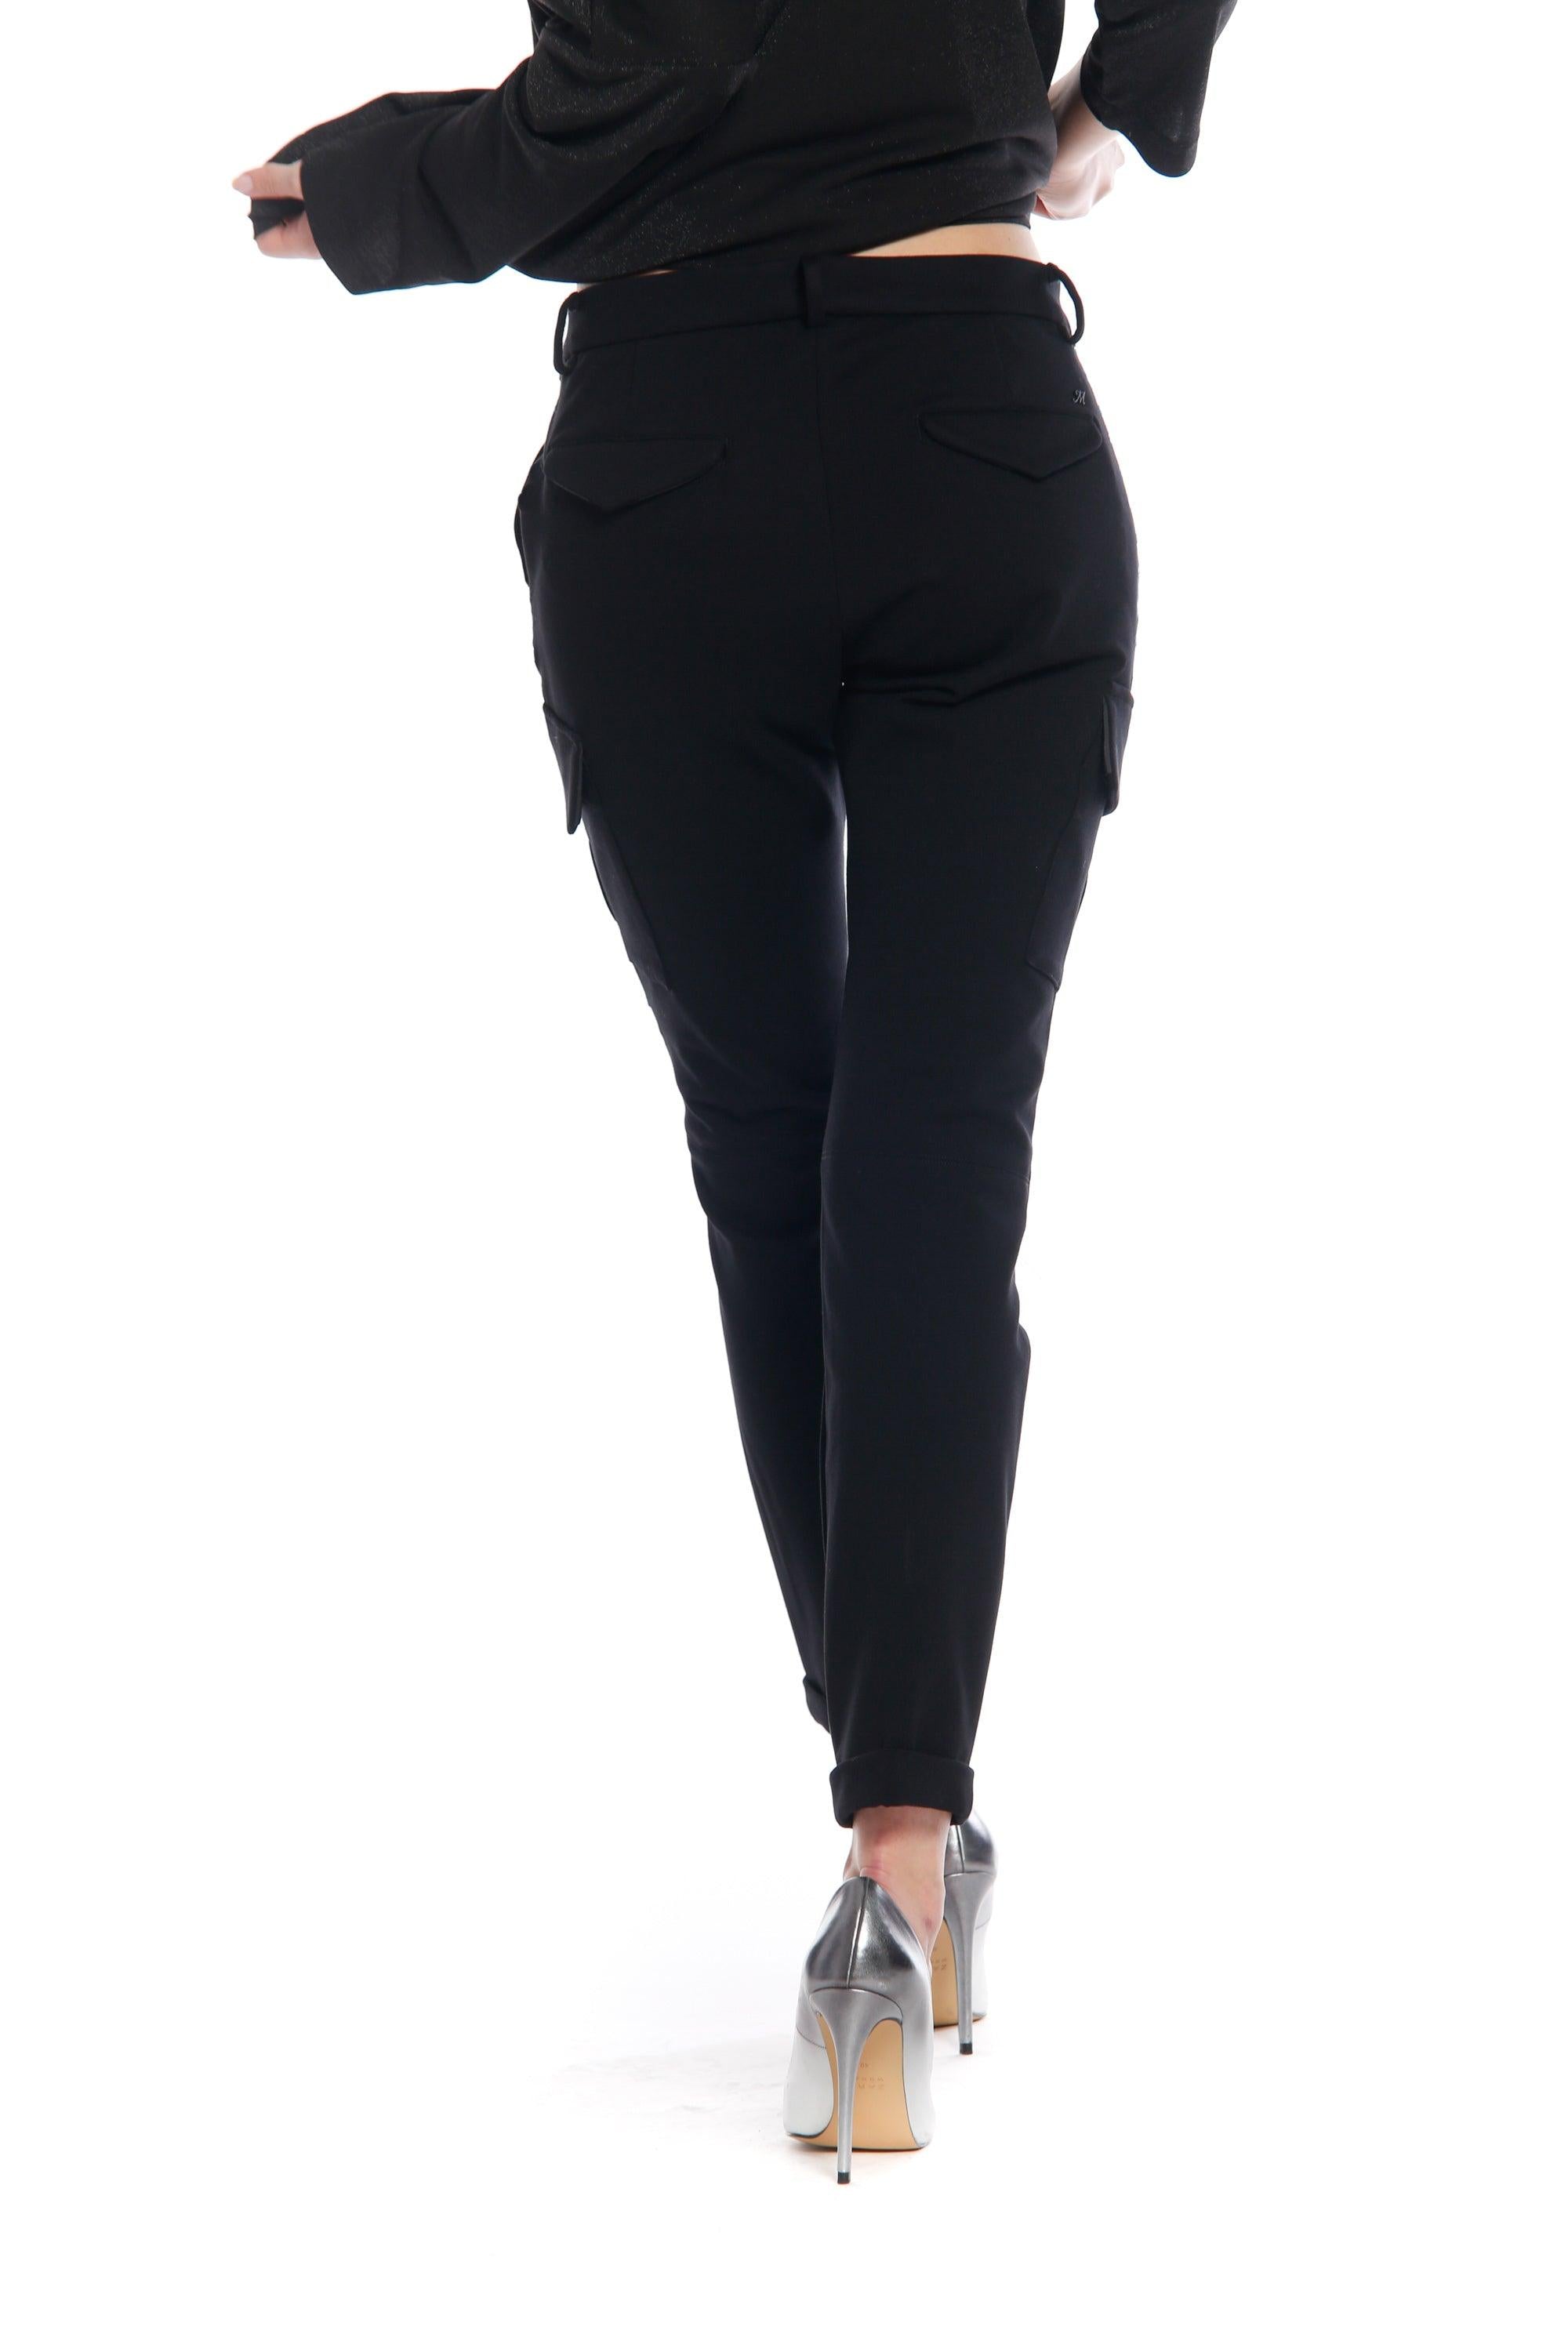 Bild 3 der Damen- Cargo  Hose aus Jersey Schwarz Modell Chile City von Mason’s